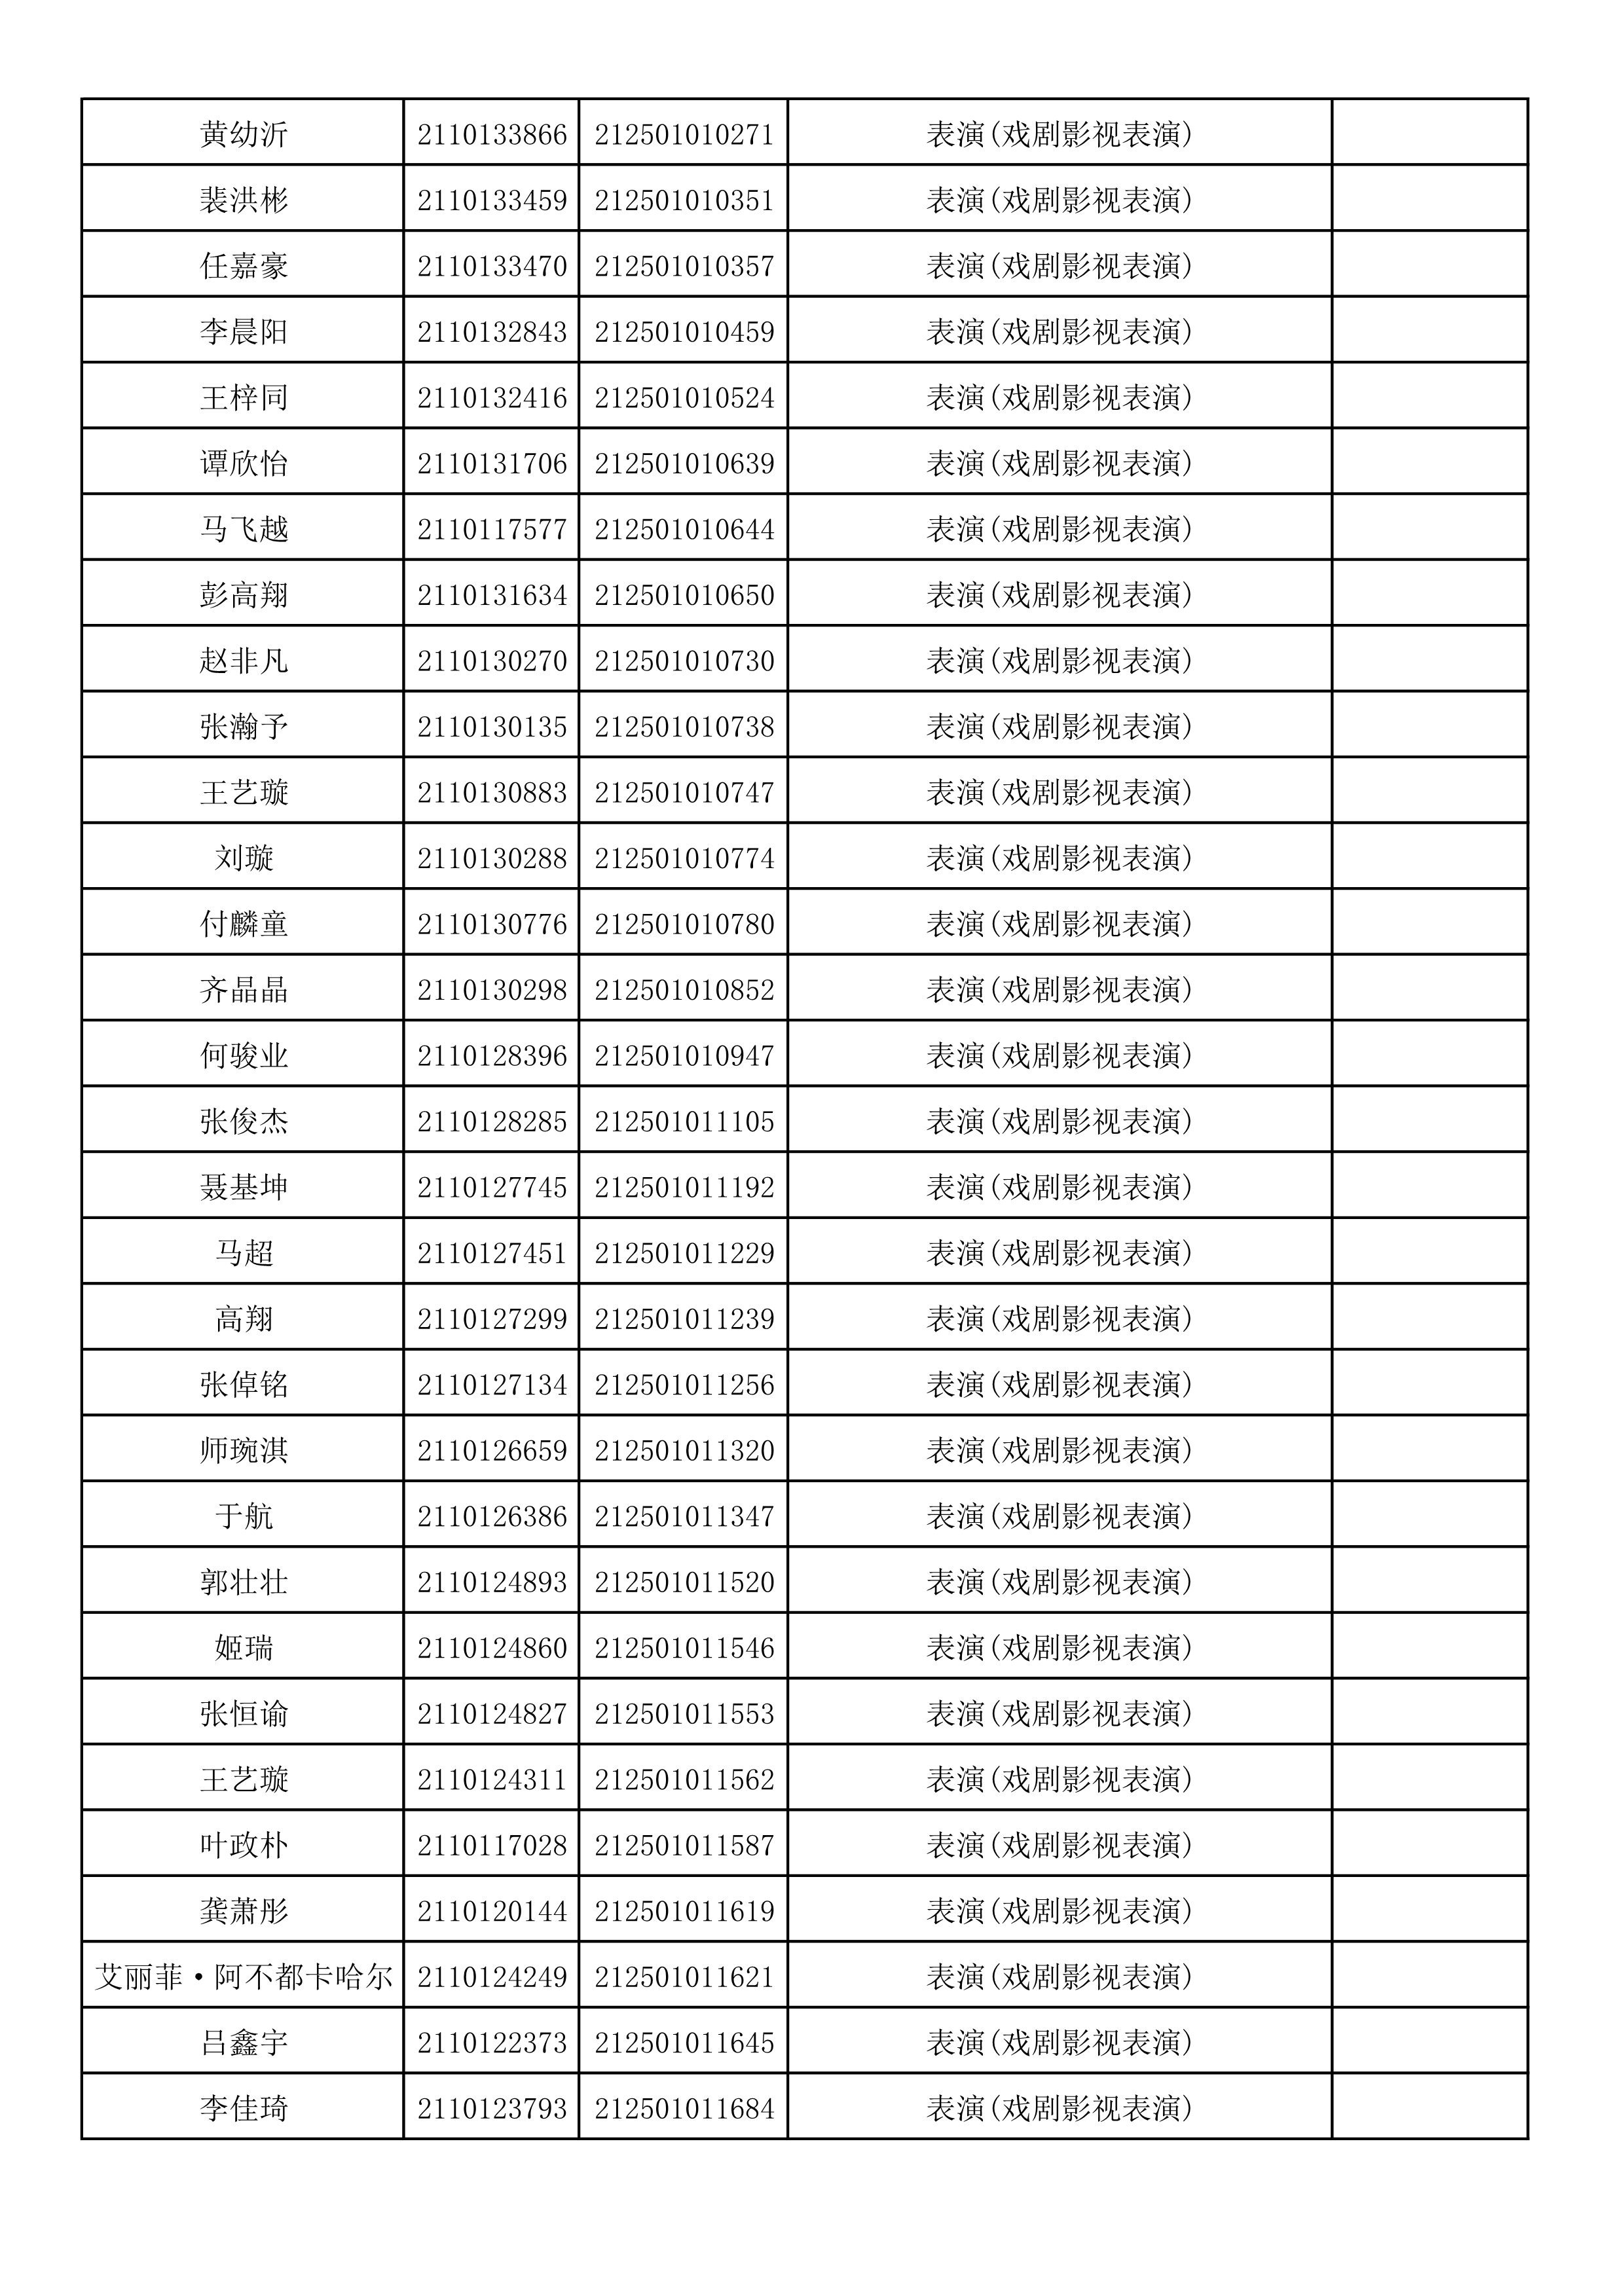 附件2：浙江音乐学院2021年本科招生专业校考初试合格考生名单_89.png